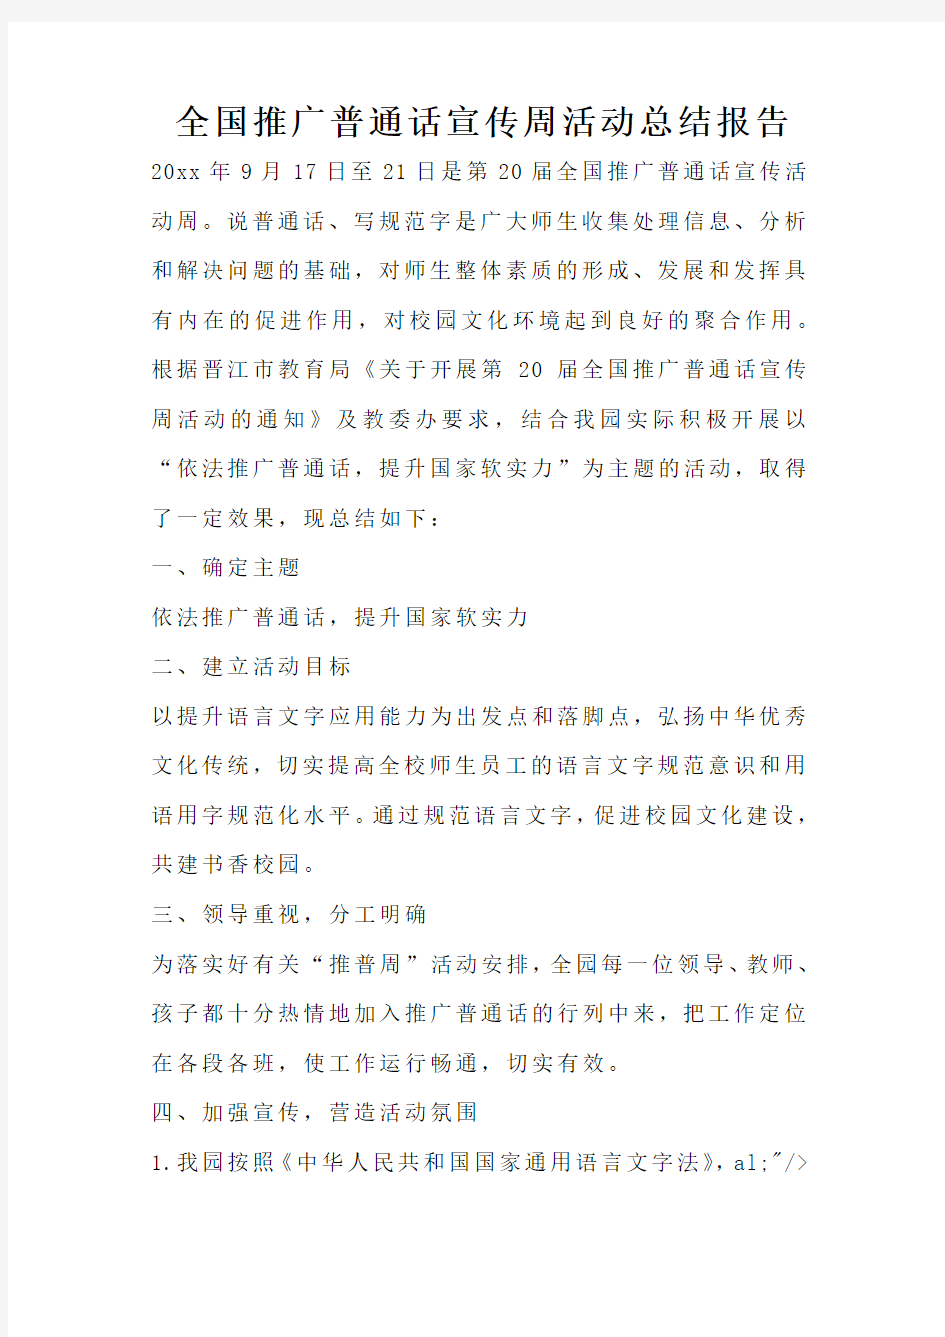 全国推广普通话宣传周活动总结报告